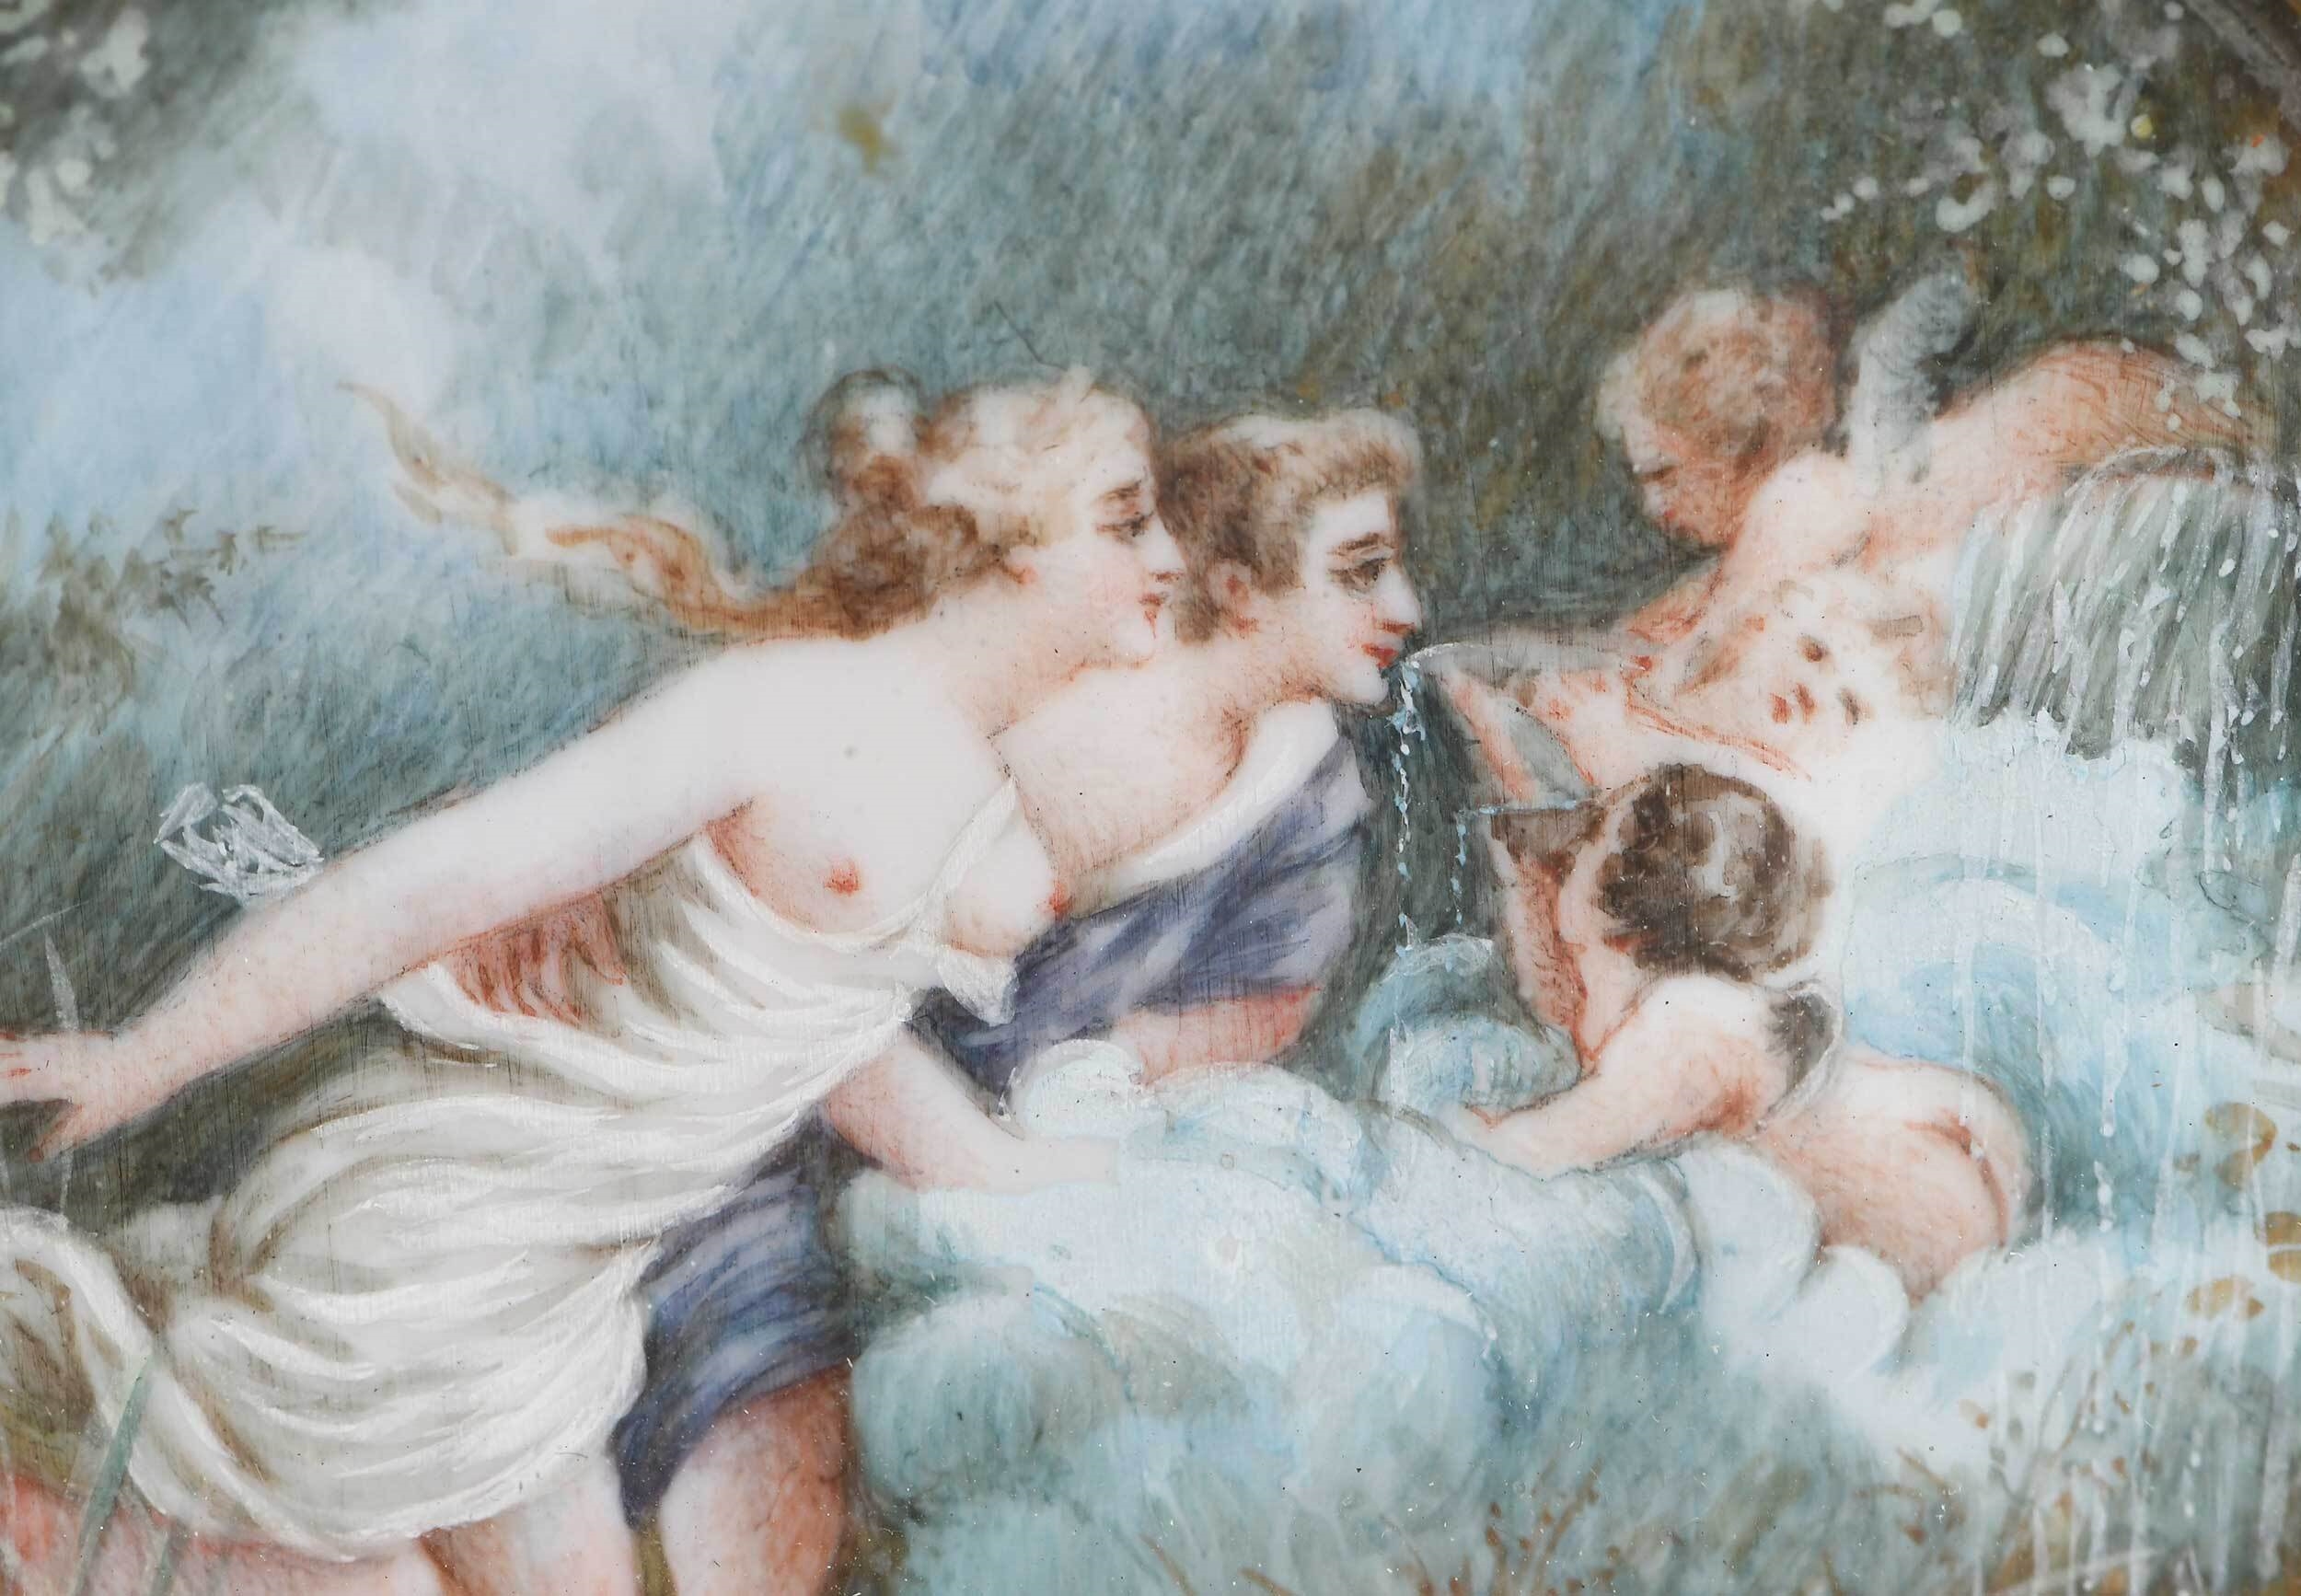 La fontaine d'amour, Jean Honore Fragonard